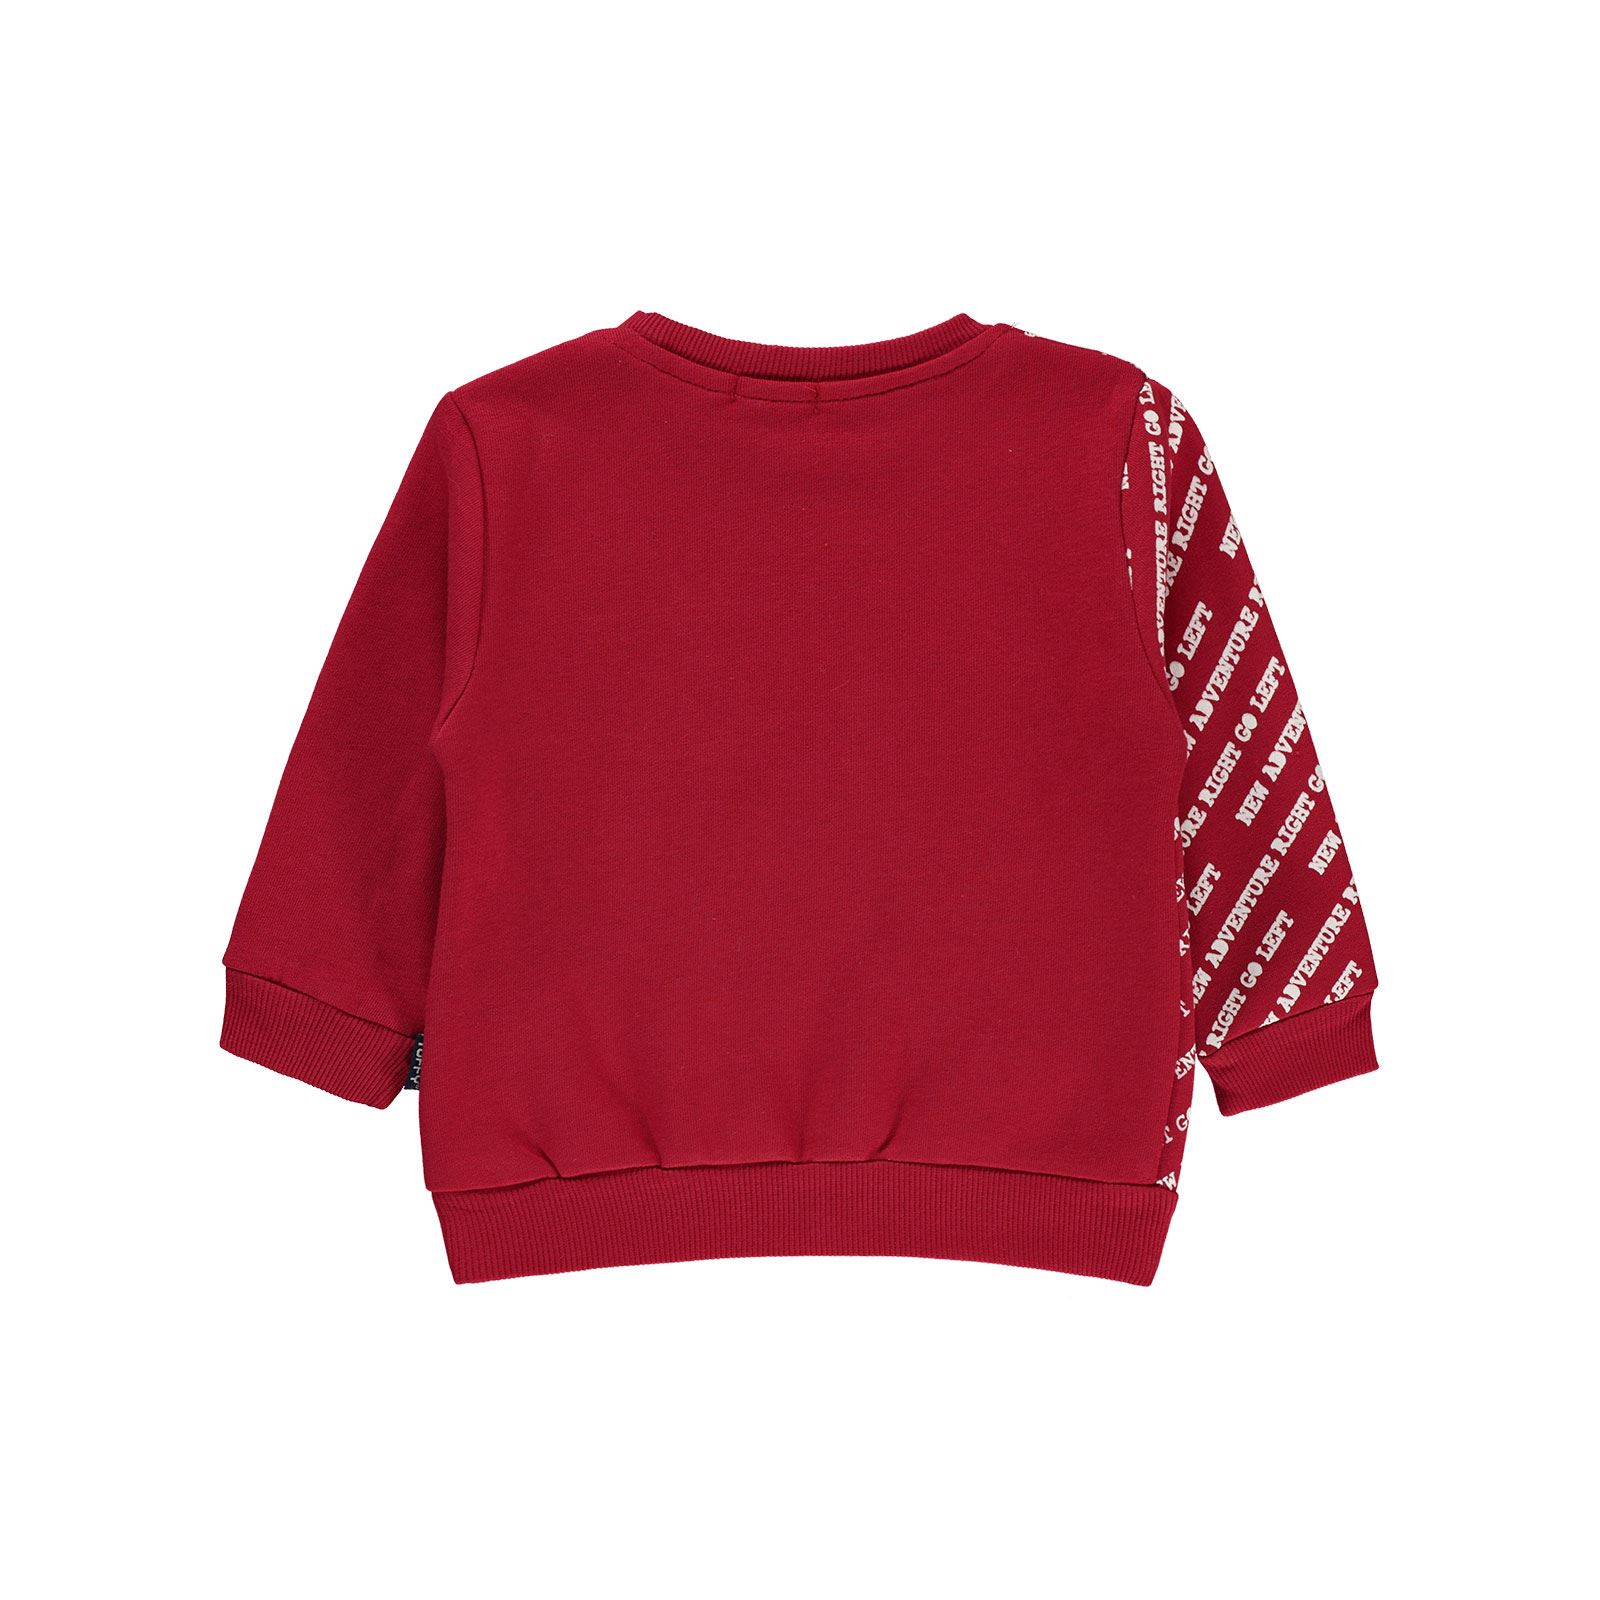 Tufyy Erkek Çocuk Sweatshirt 1-4 Yaş Kırmızı